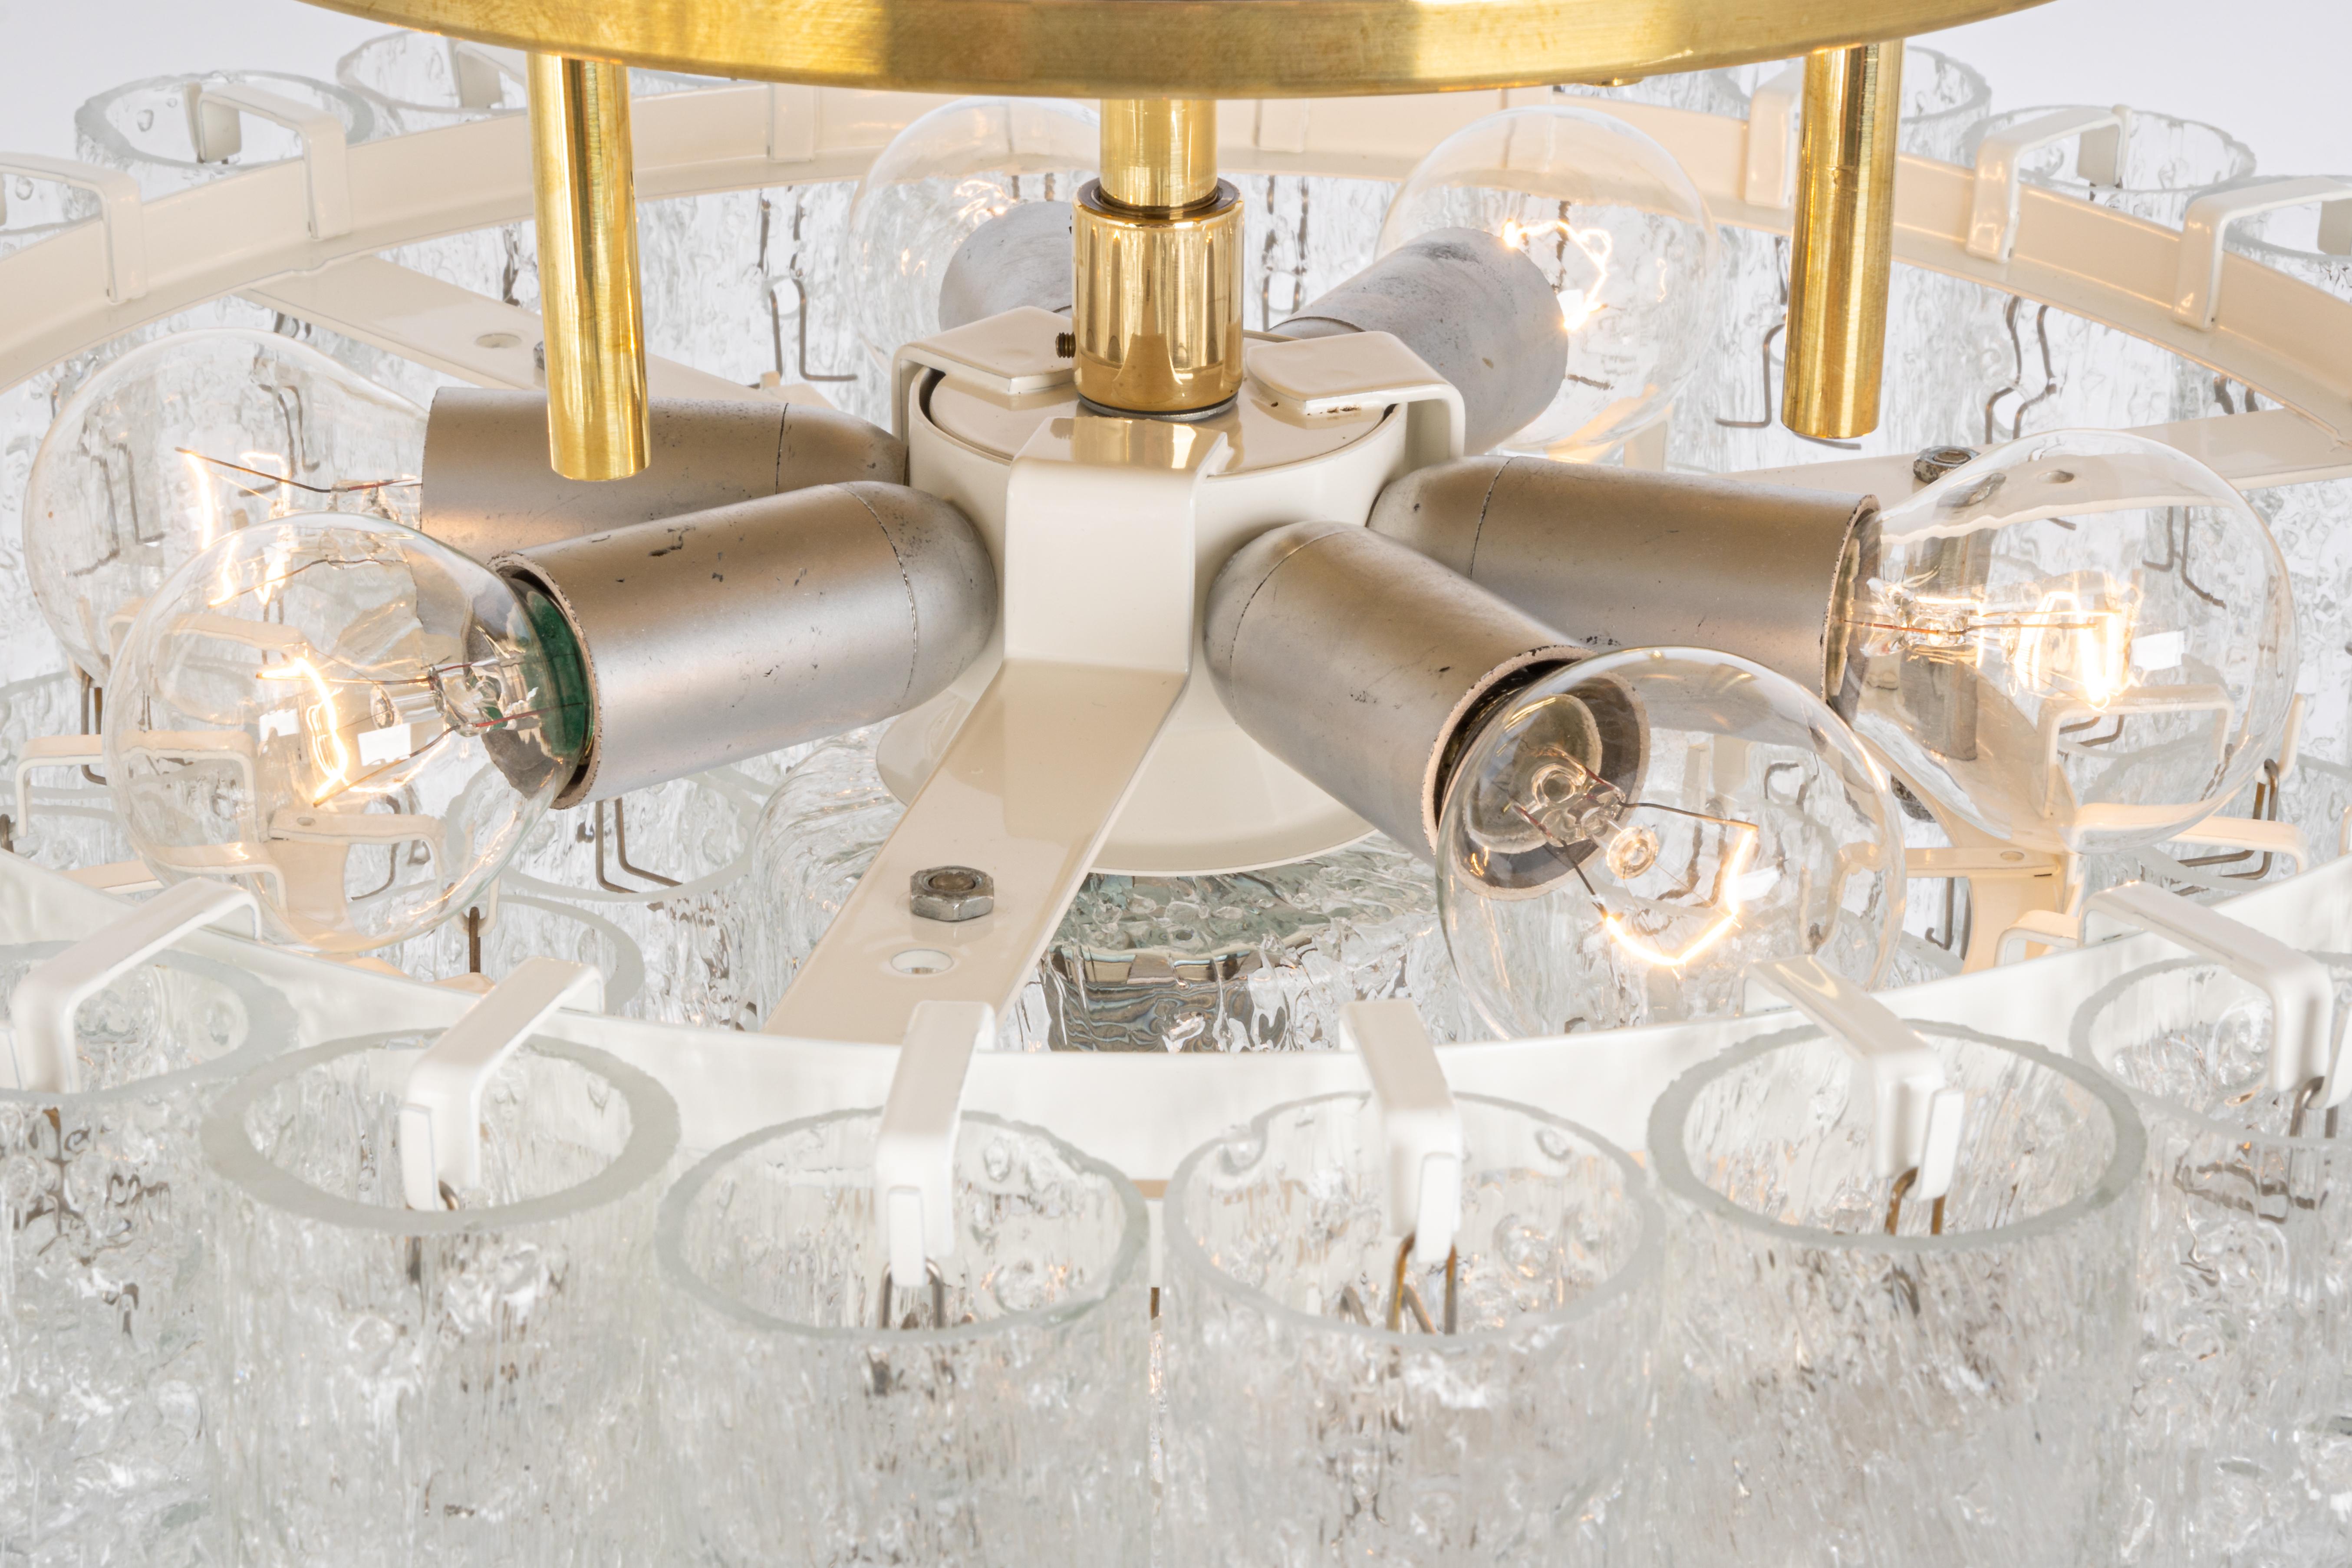 Fantastischer dreistöckiger Kronleuchter aus der Mitte des Jahrhunderts von Doria, Deutschland, hergestellt ca. 1960-1969. Drei Ringe aus Muranoglaszylindern hängen an einer Halterung.

Steckdosen: 7 x E14 Kandelaber-Glühbirnen (bis zu je 40 W)